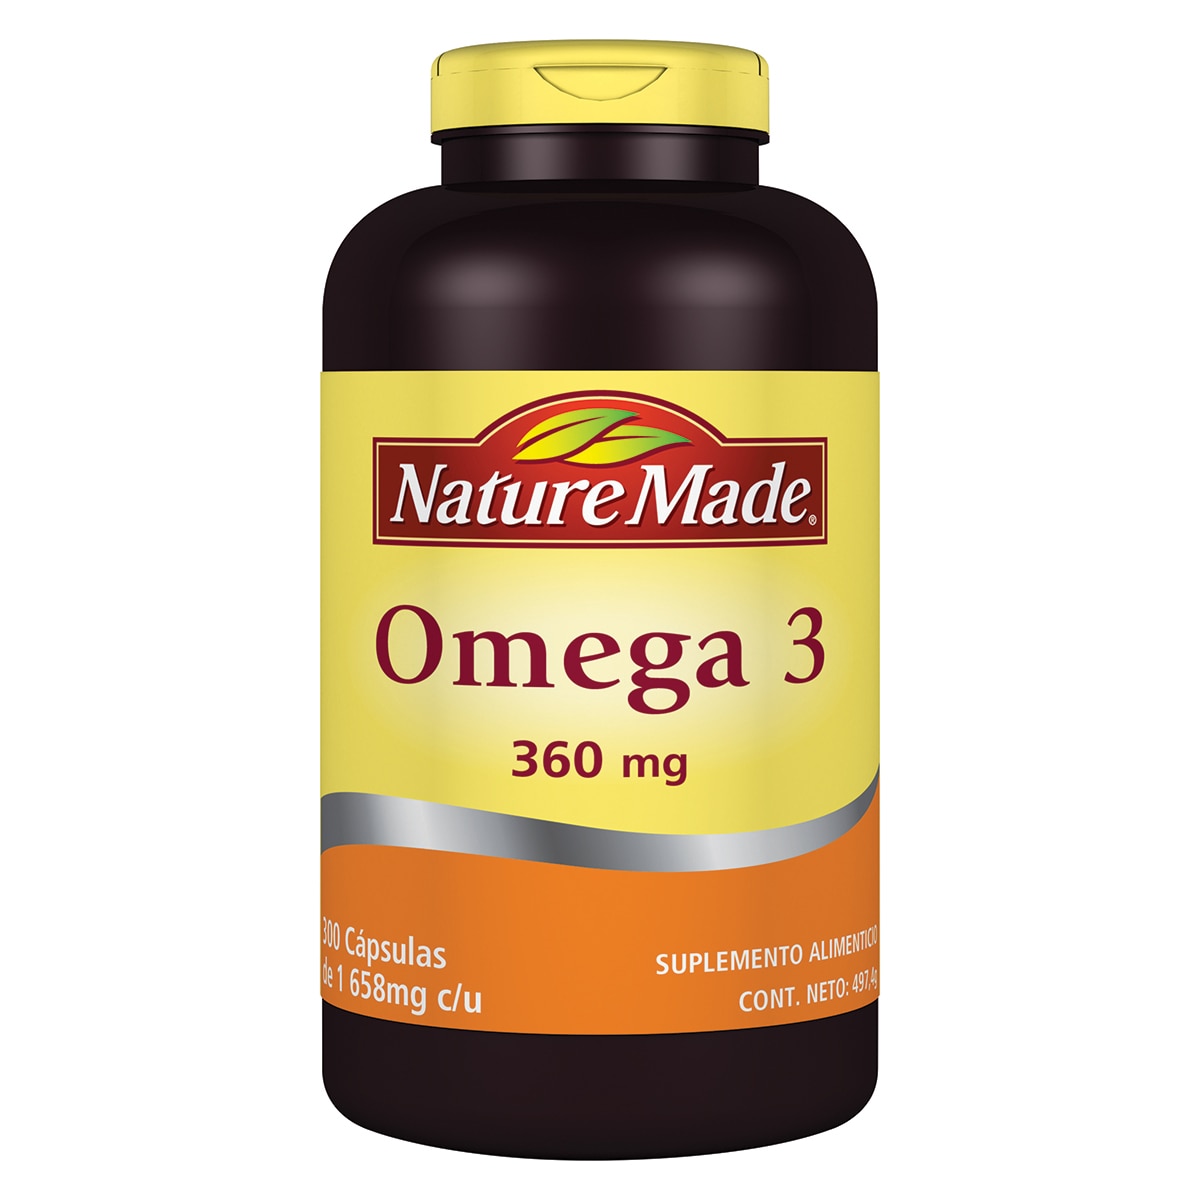 Nature Made Omega 3 aceite de pescado 